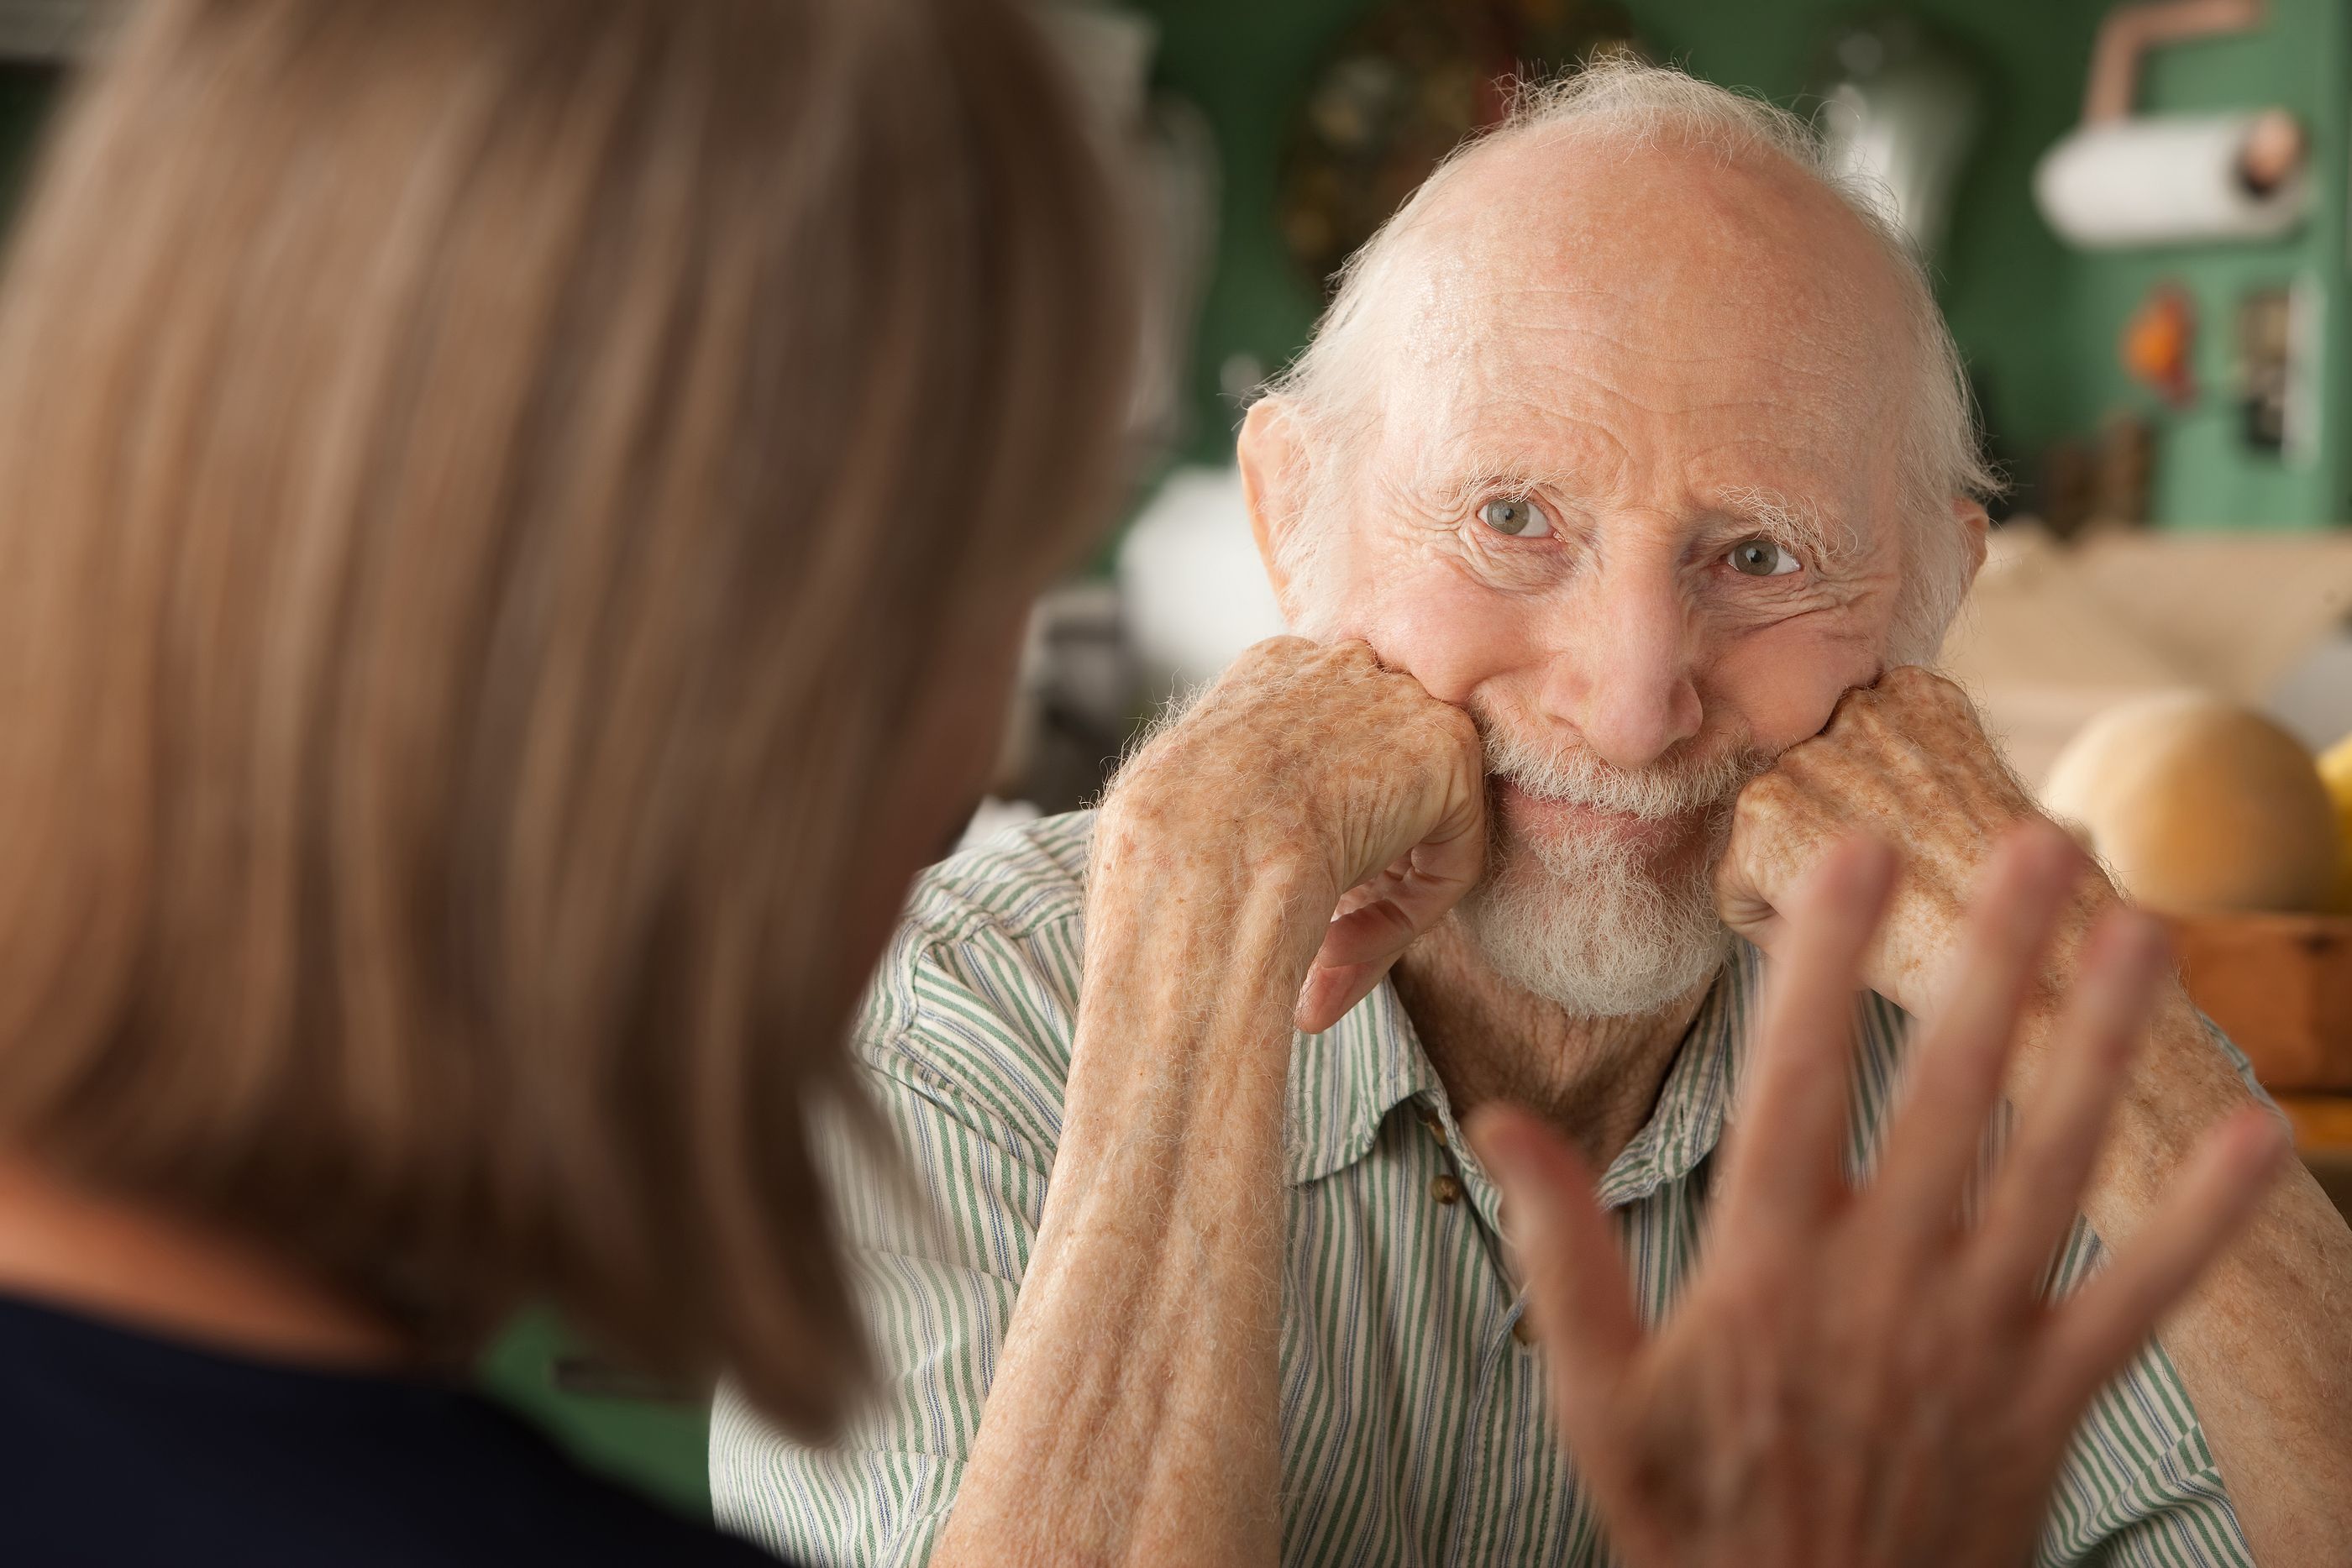 Descubren que hay diferencias en el envejecimiento cognitivo entre hombres y mujeres mayores (Bigstock)